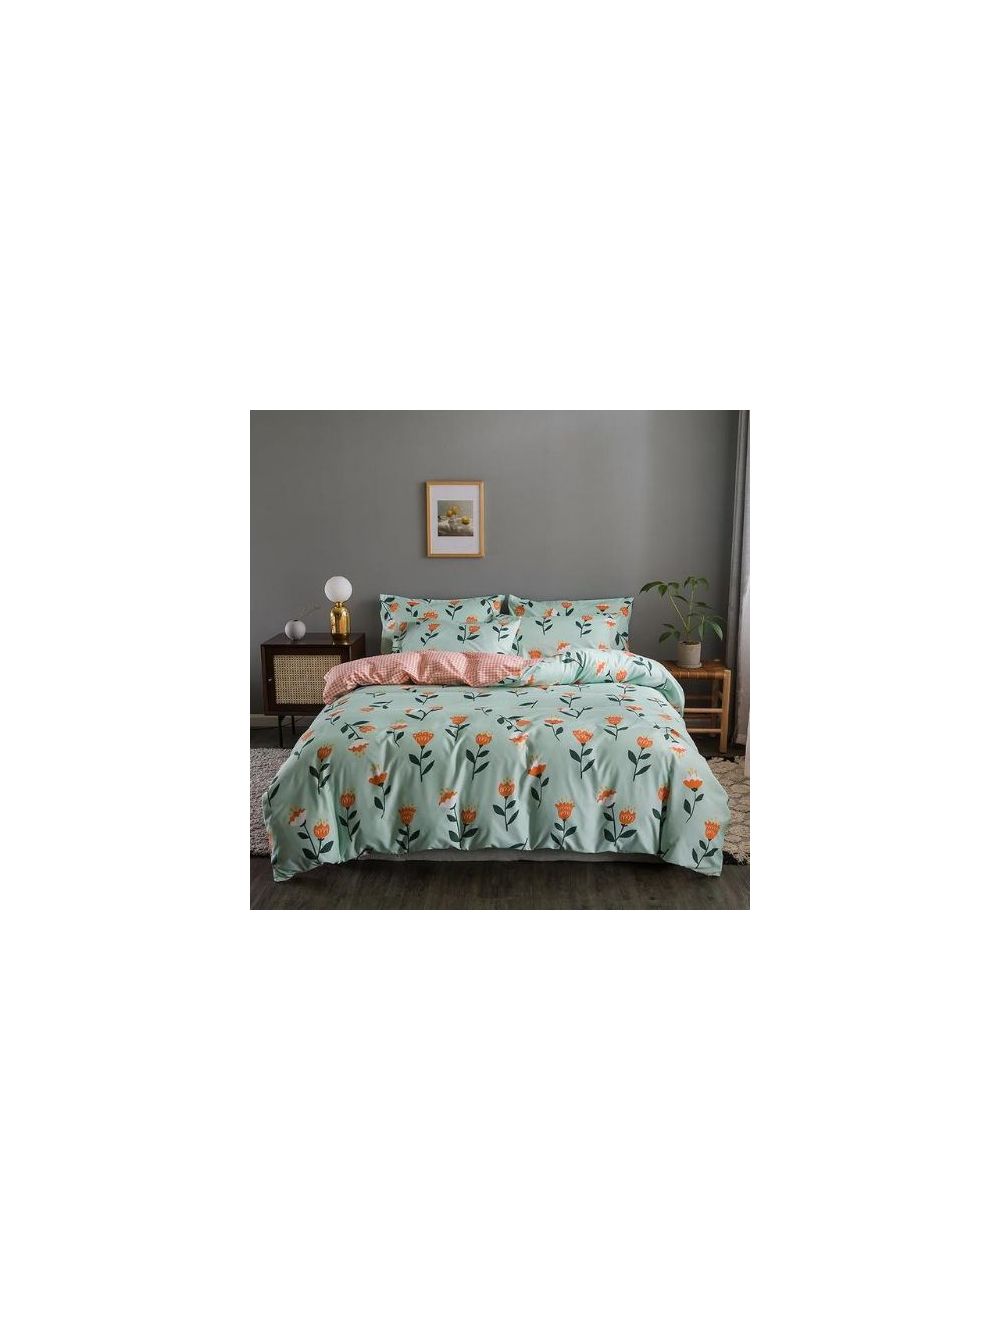 DEALS FOR LESS - Queen/double Size, Duvet Cover, Bedding Set Of 6 Pieces, Unicorn Design, 1 Duvet Cover + 1 Bedsheet + 4 Pillow Covers.-hz25-23d/q